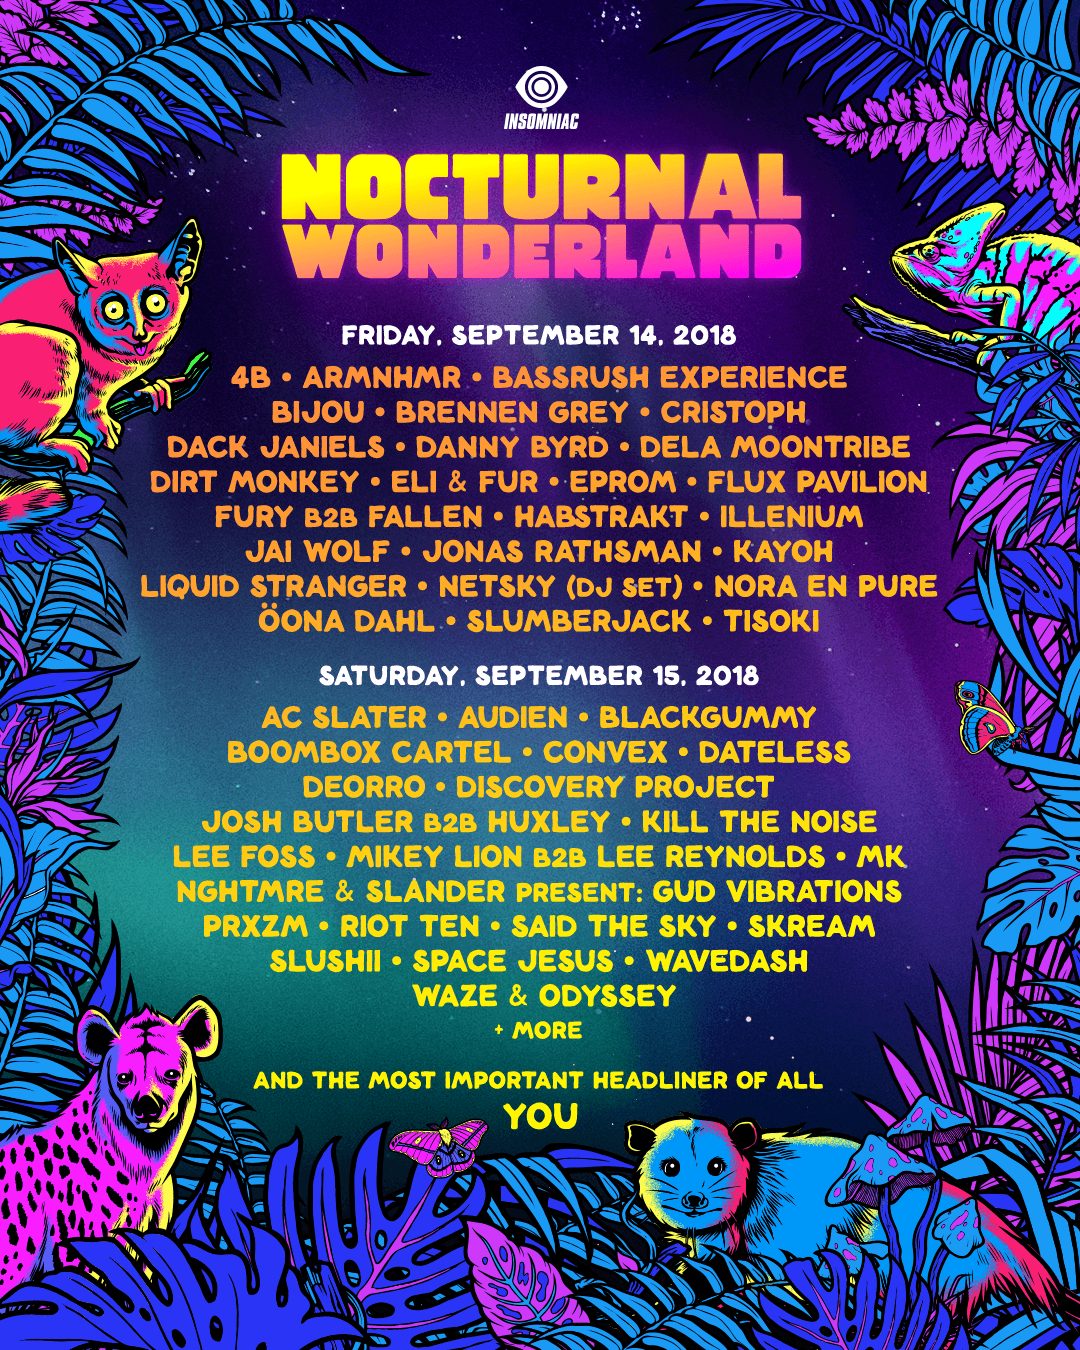 nocturnal wonderland 2019 tickets